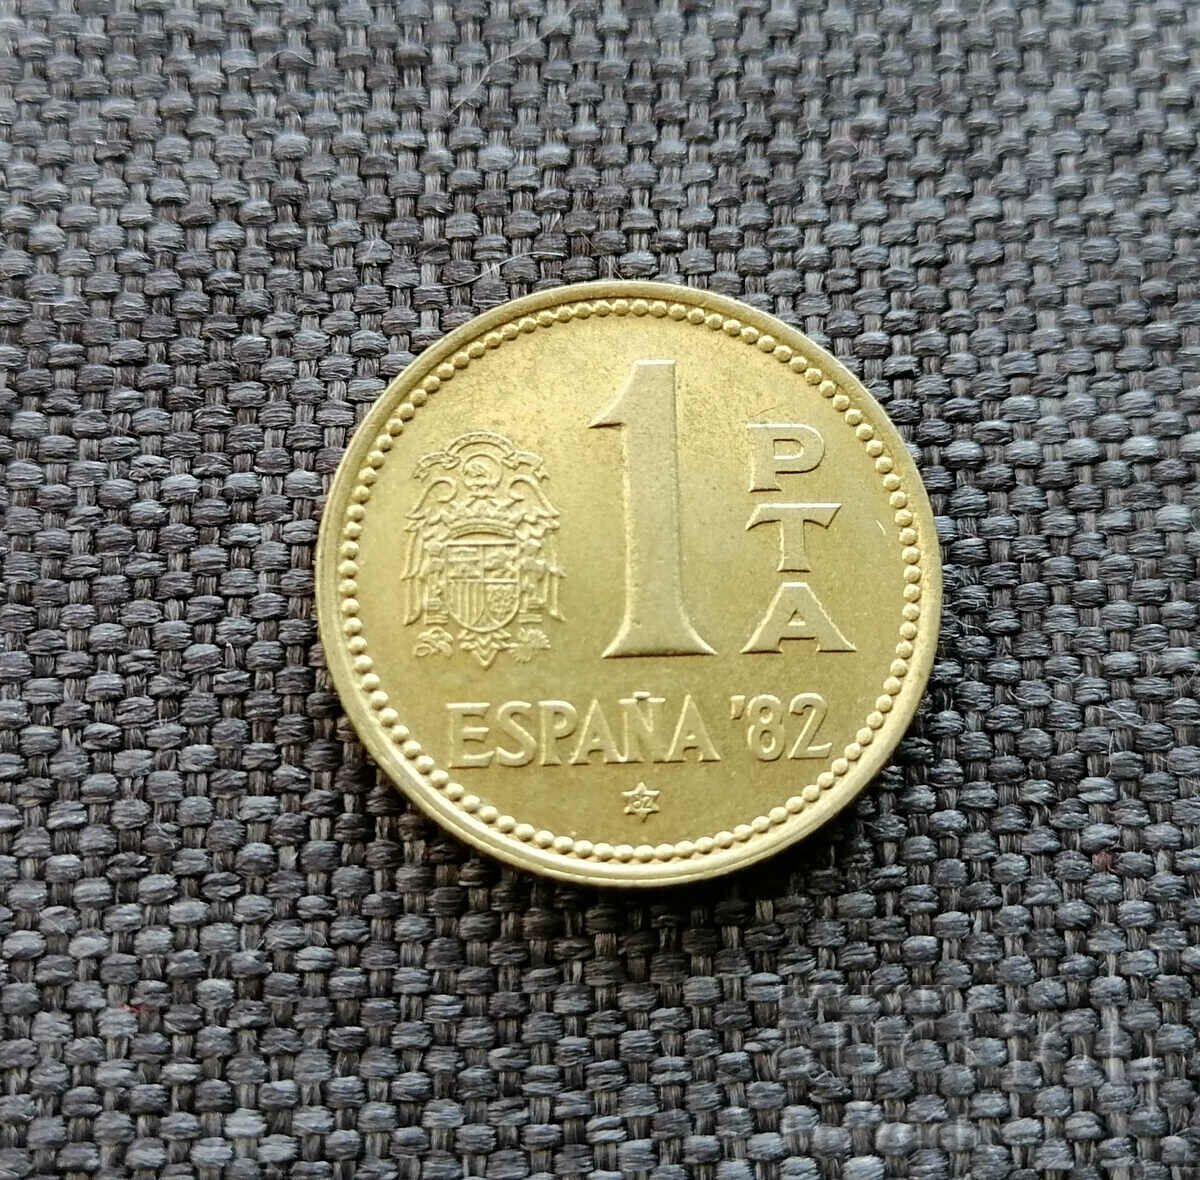 ❤️ ⭐ Spain 1980 1 peseta ⭐ ❤️